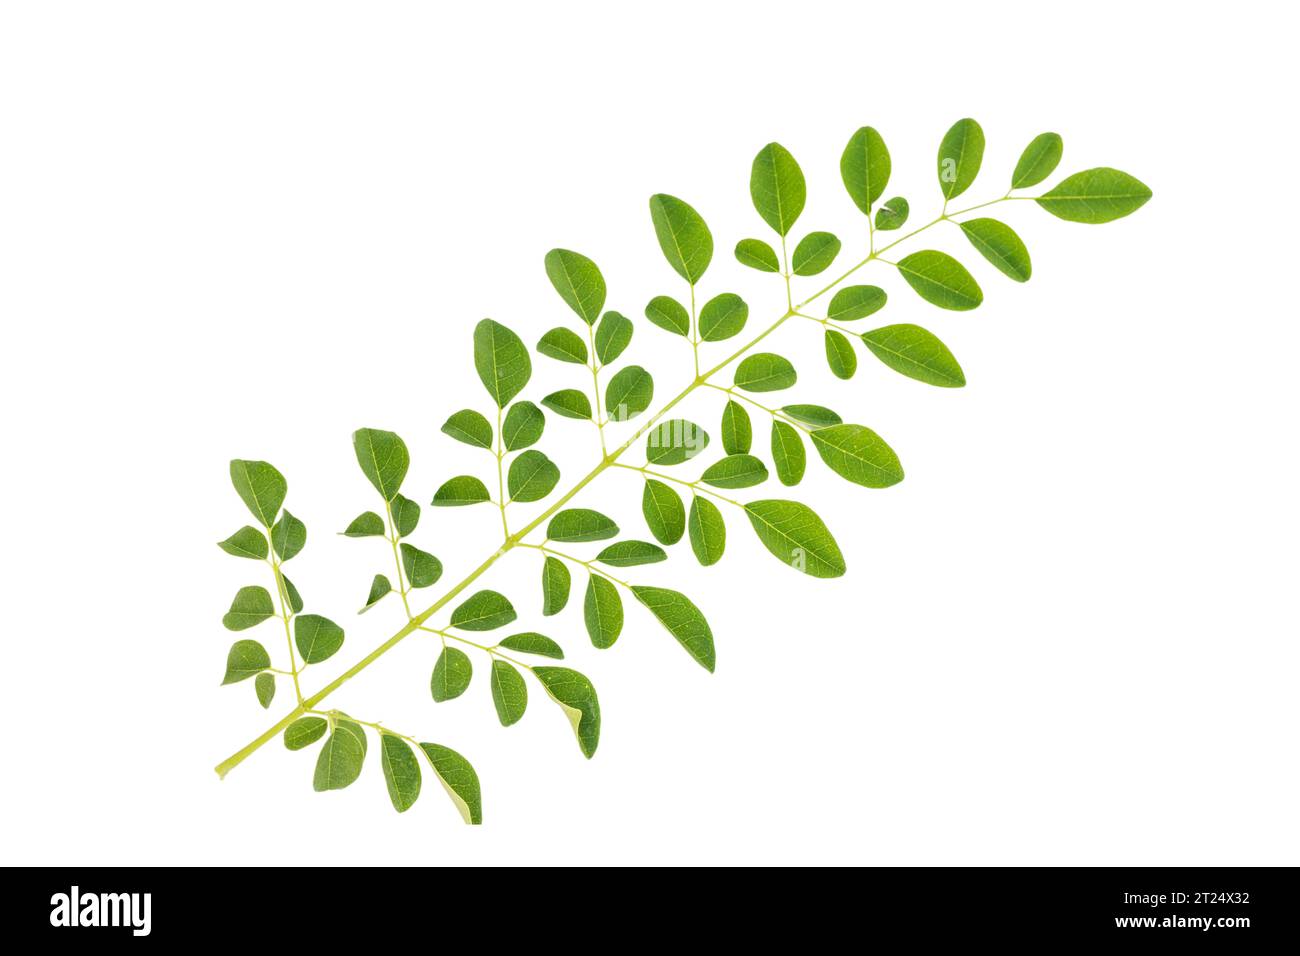 Flache Lagen frischer grüner Moringa-Blätter, isoliert auf weißem Hintergrund. Stockfoto